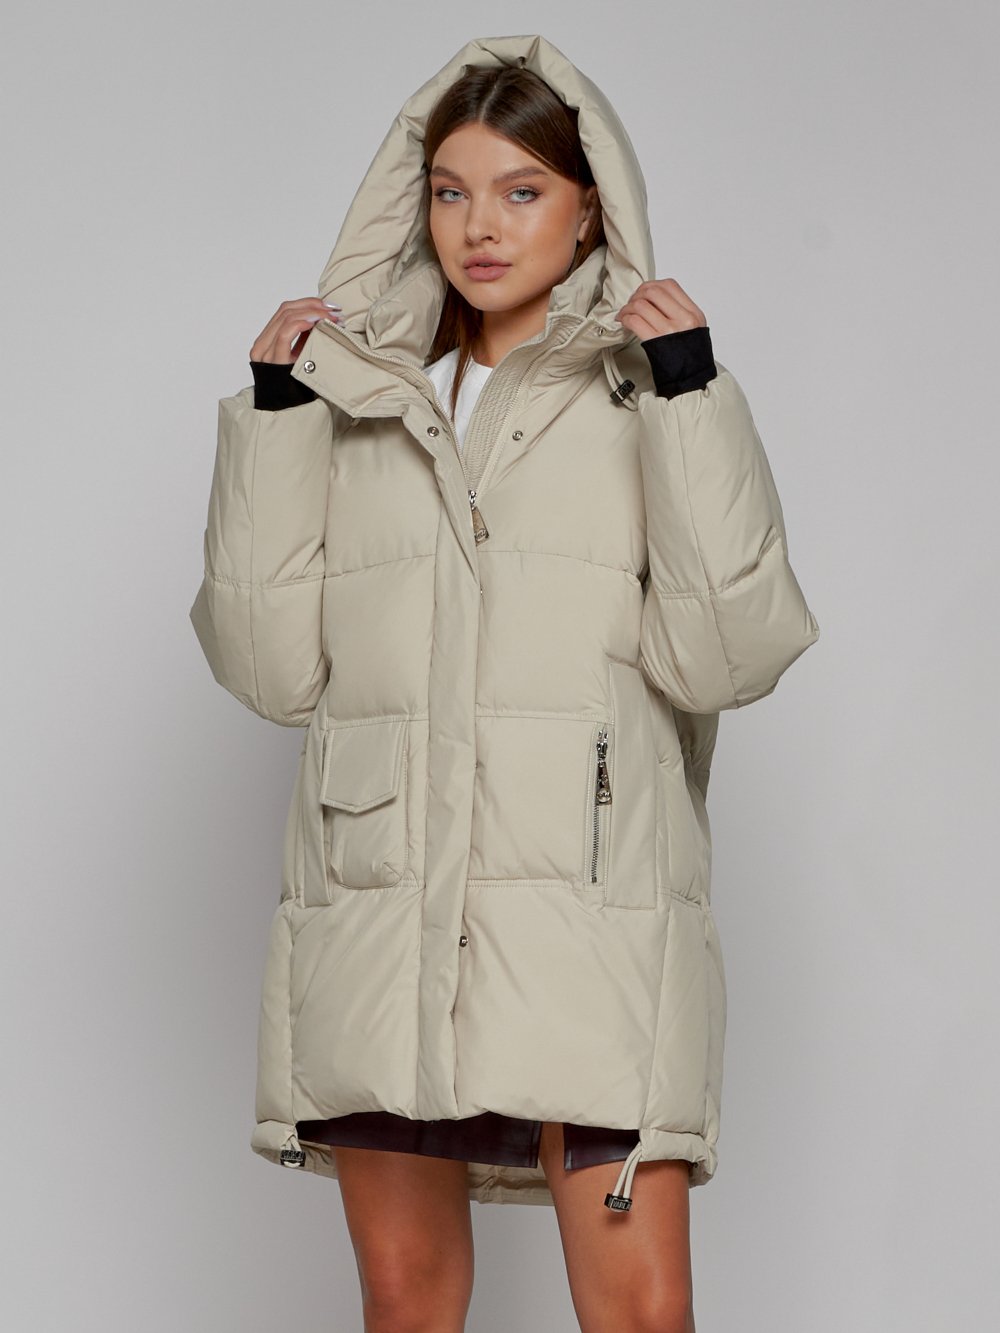 Купить куртку женскую оптом от производителя недорого в Москве 51122B 1